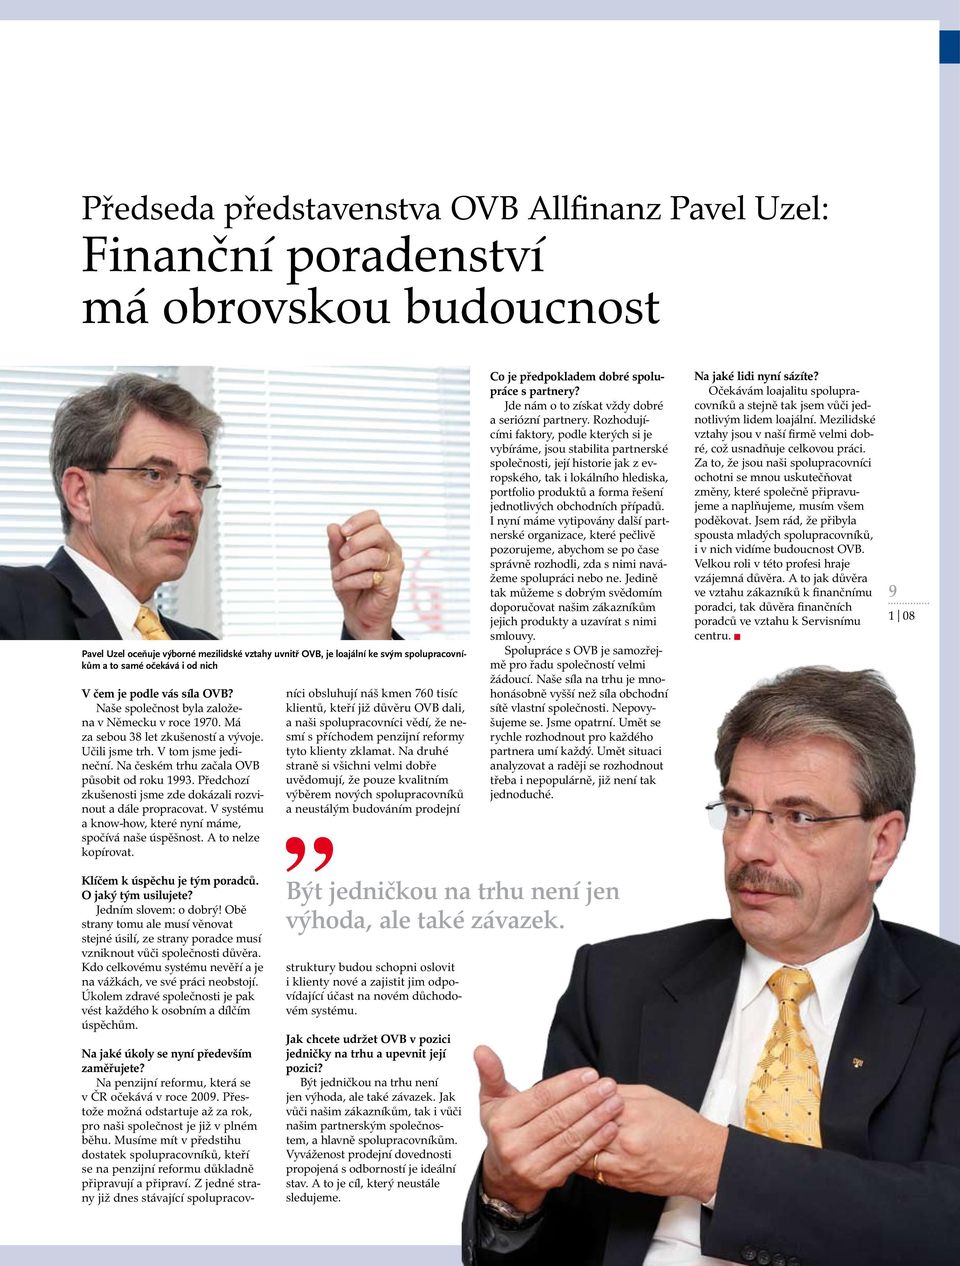 Na českém trhu začala OVB působit od roku 1993. Předchozí zkušenosti jsme zde dokázali rozvinout a dále propracovat. V systému a know-how, které nyní máme, spočívá naše úspěšnost.